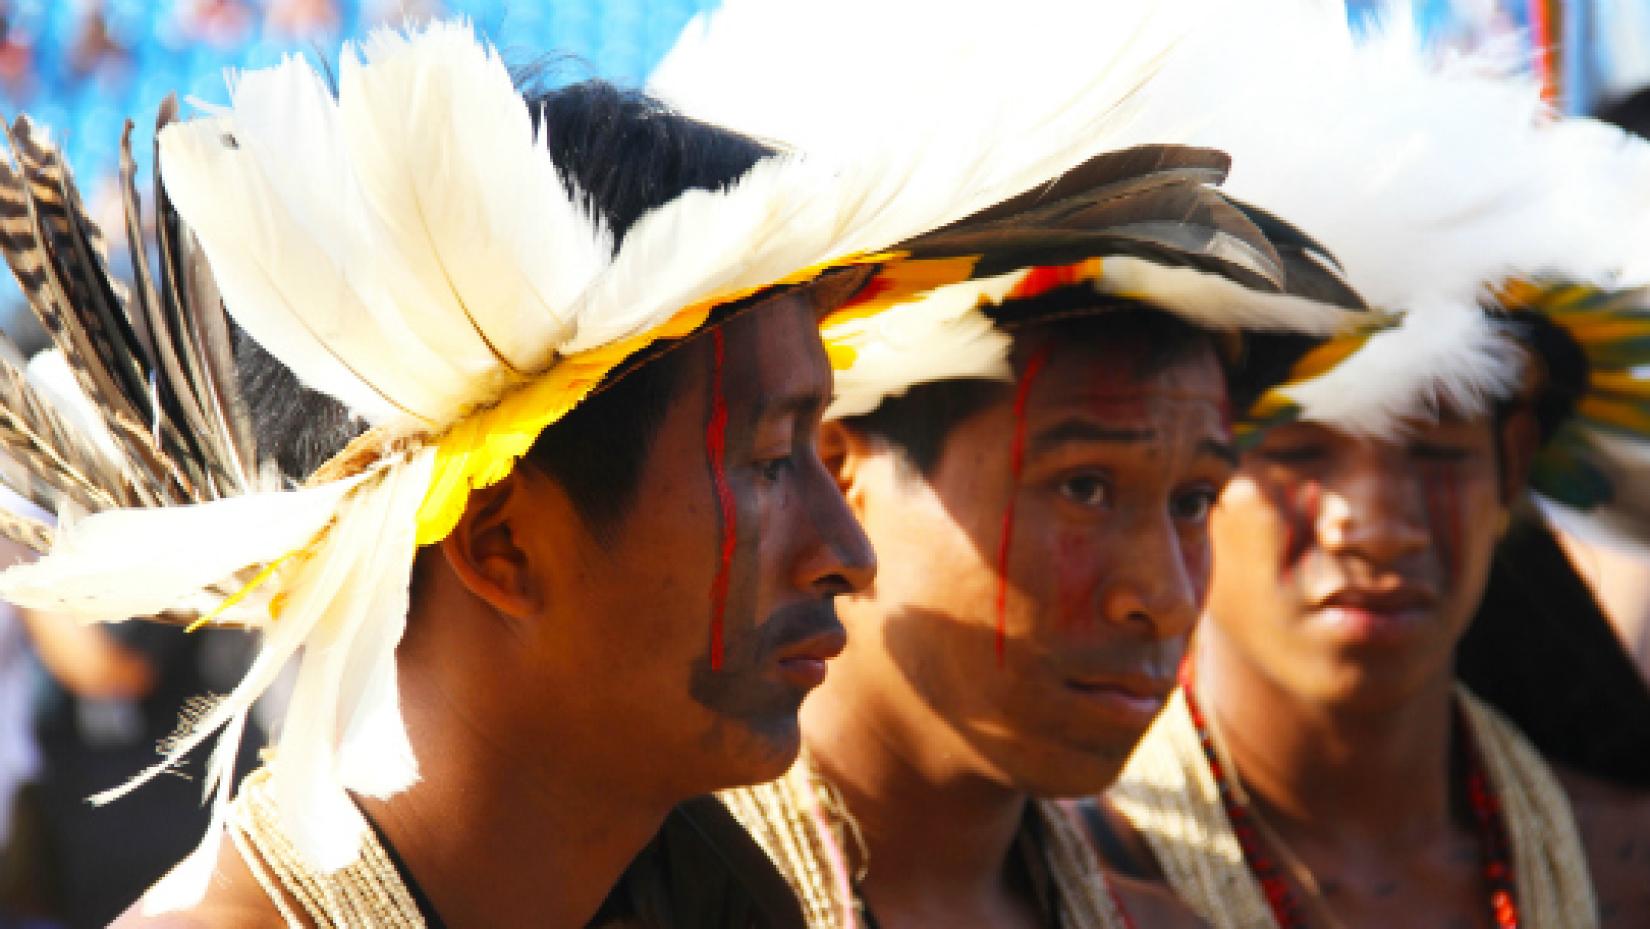 Declaração, adotada pela Assembleia Geral da ONU em 13 de setembro de 2007, estabelece diretrizes universais de padrões mínimos de sobrevivência para a dignidade e o bem-estar dos povos indígenas do mundo. Foto: PNUD / Tiago Zenero